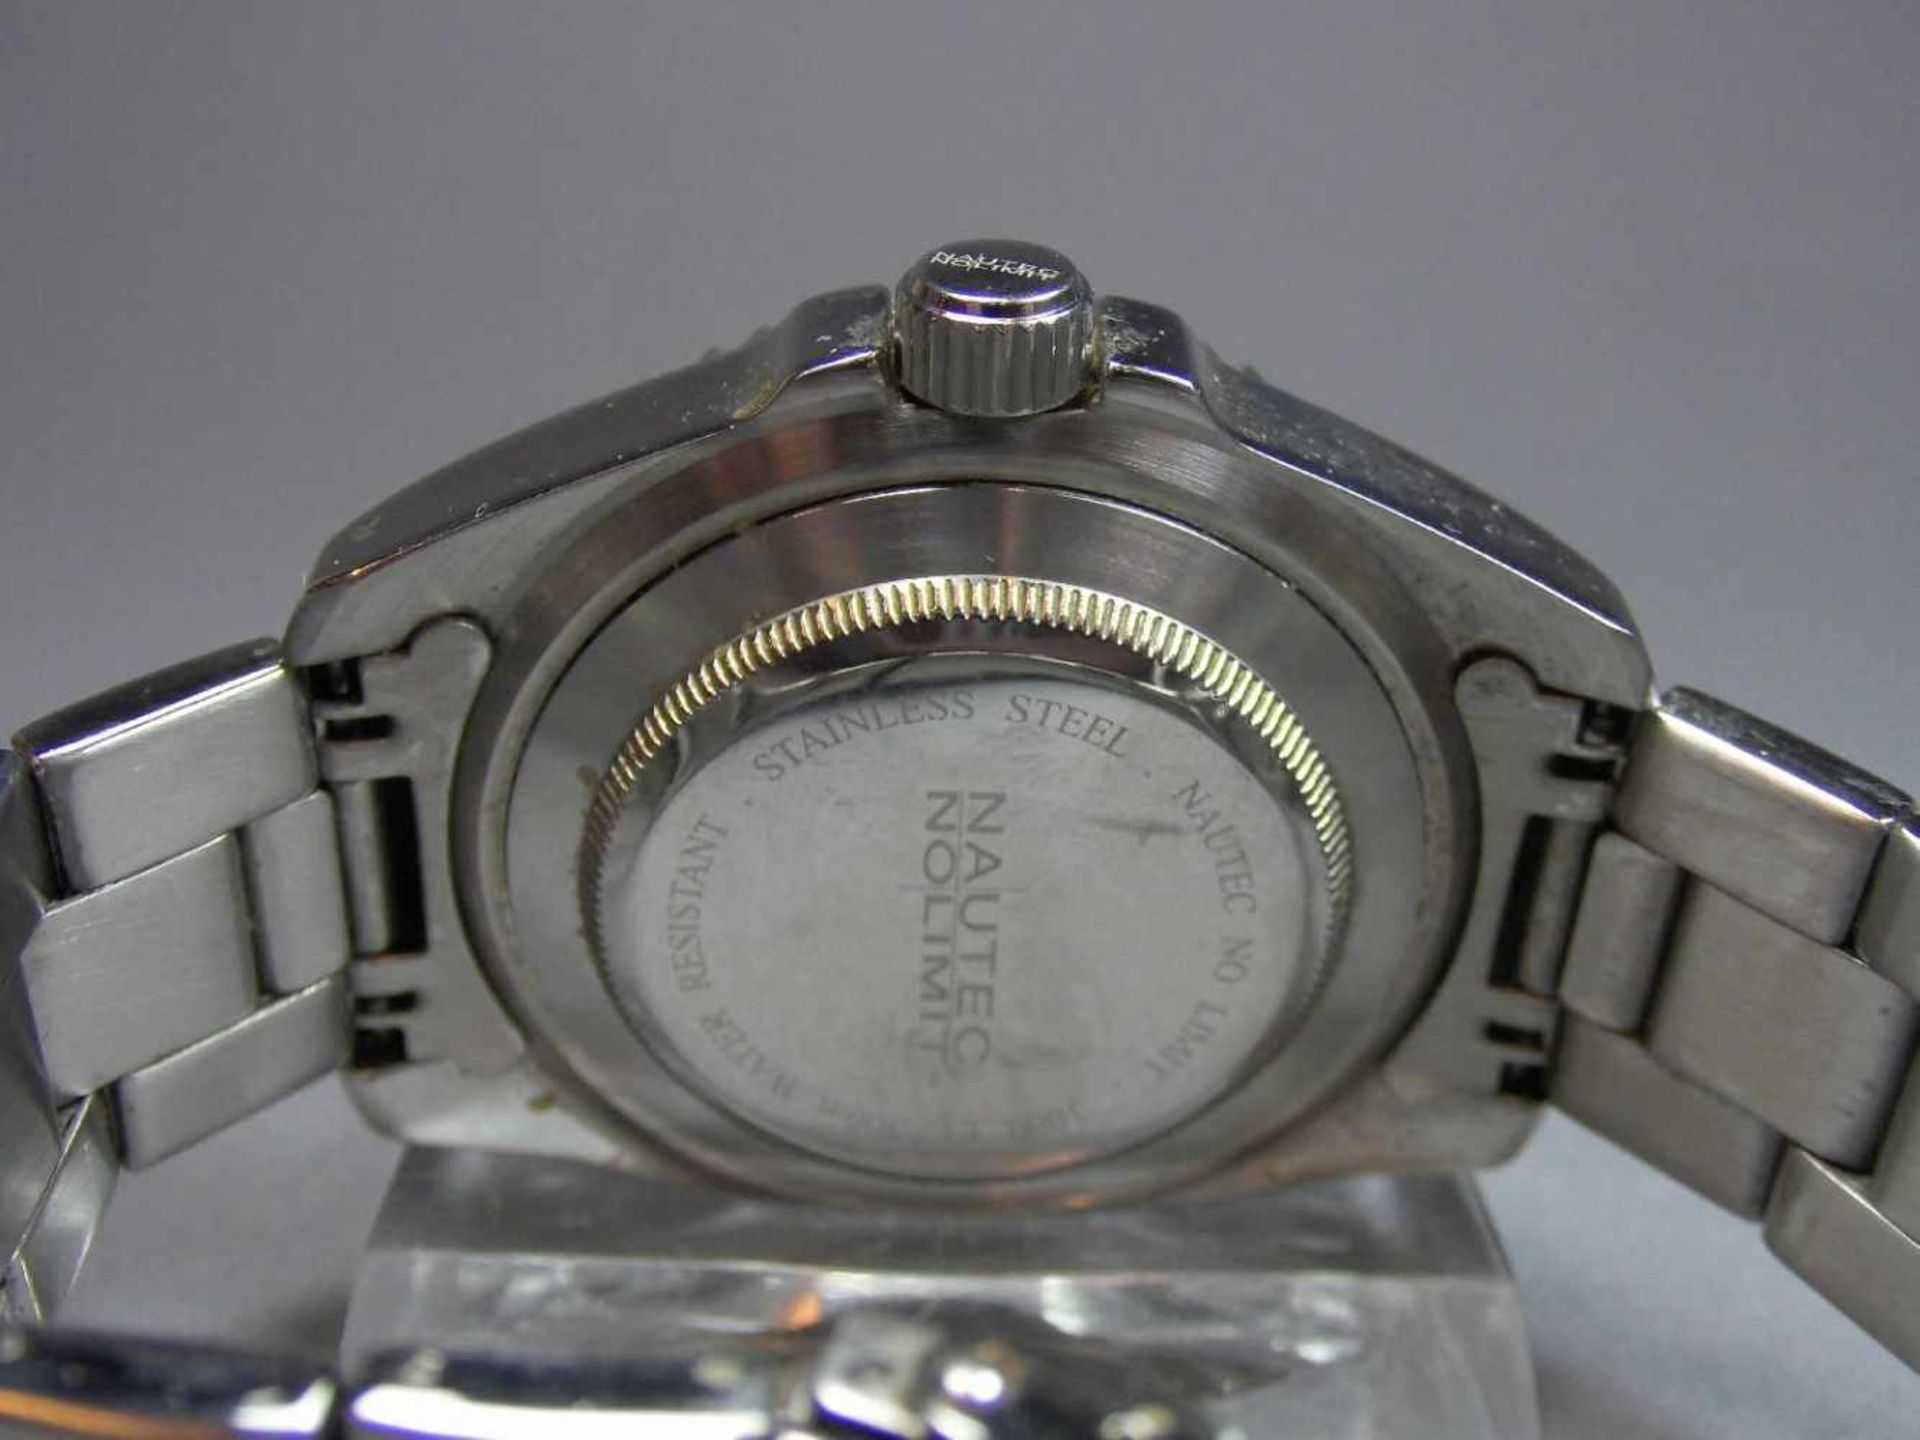 ARMBANDUHR : NAUTEK NO LIMIT GMT / wristwatch, Automatik-Uhr. Rundes Stahlgehäuse mit Gliederarmband - Bild 6 aus 7